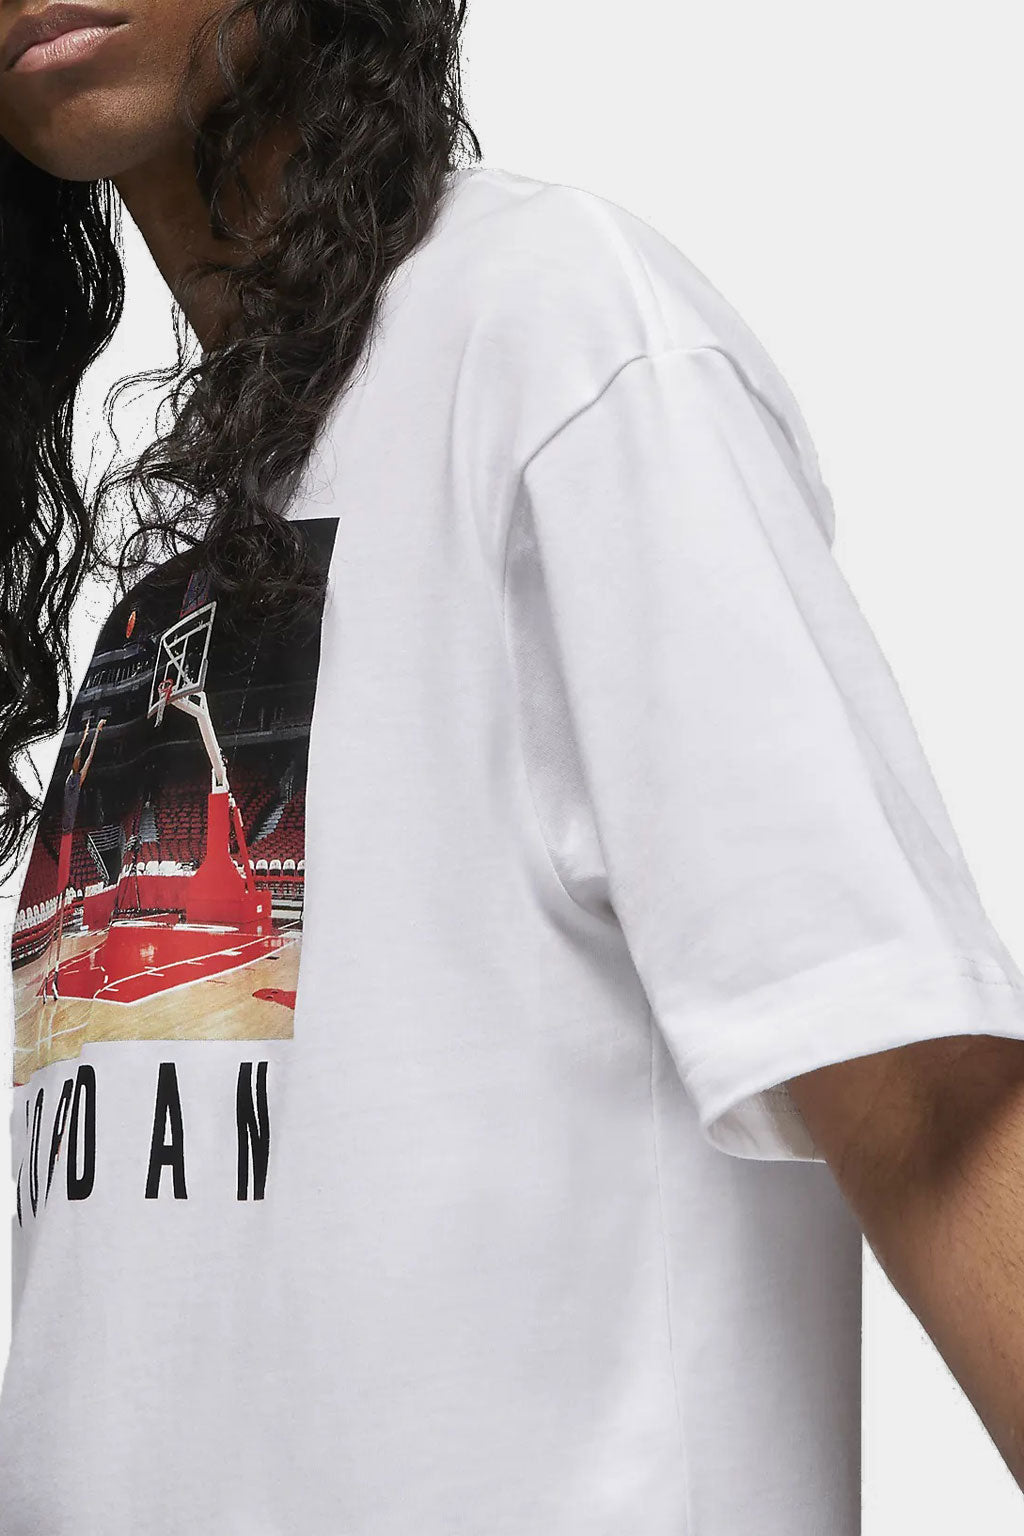 Nike Air Jordan - Jordan x UNDEFEATED Men's T-Shirt